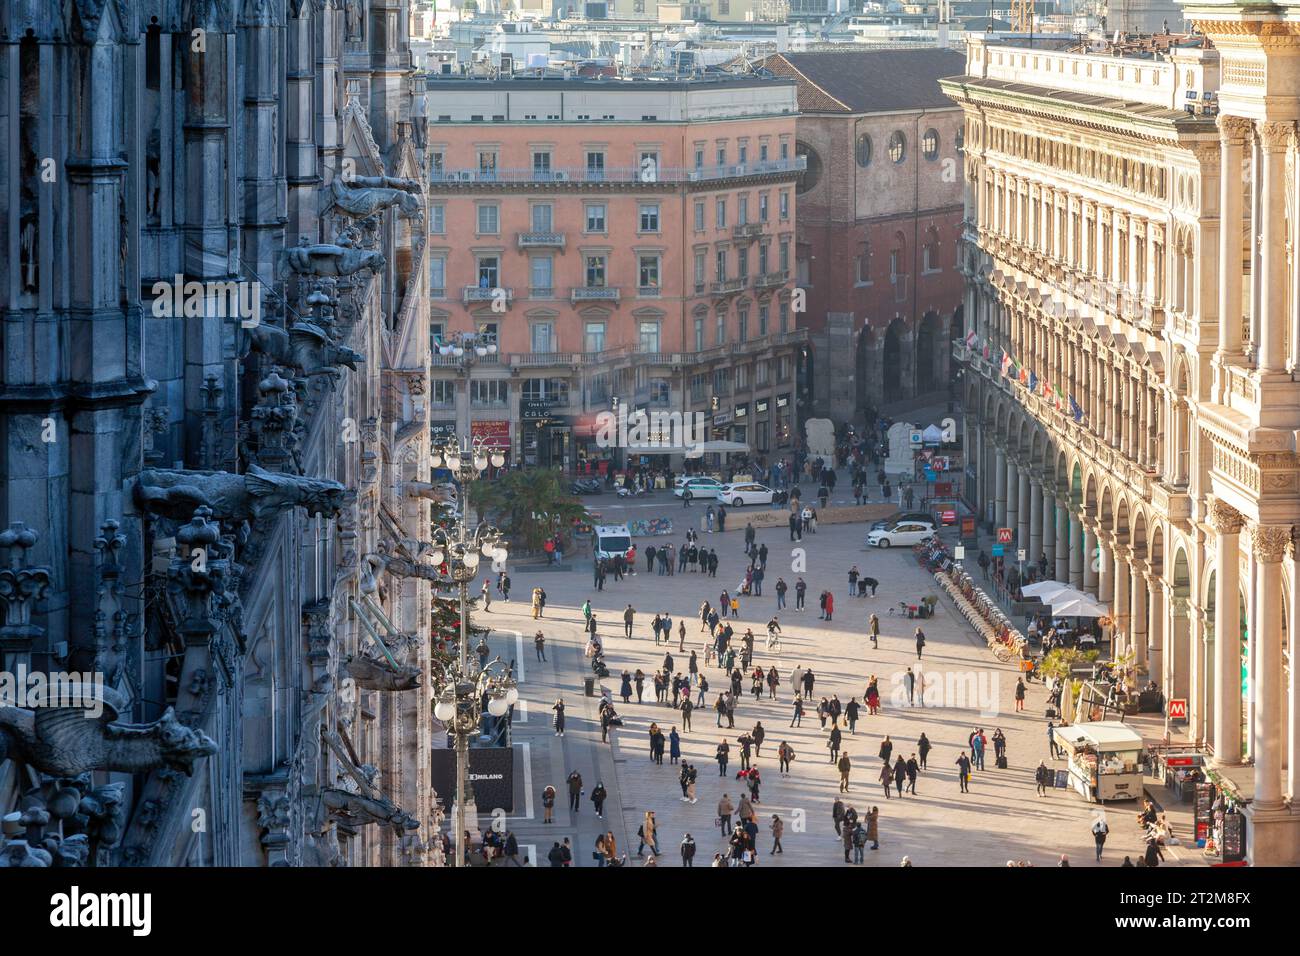 Panoramablick auf die Piazza del Duomo, von den oberen Stockwerken des Duomo aus gesehen, mit teilweiser Sicht auf die Galerie Vittorio Emanuele Stockfoto